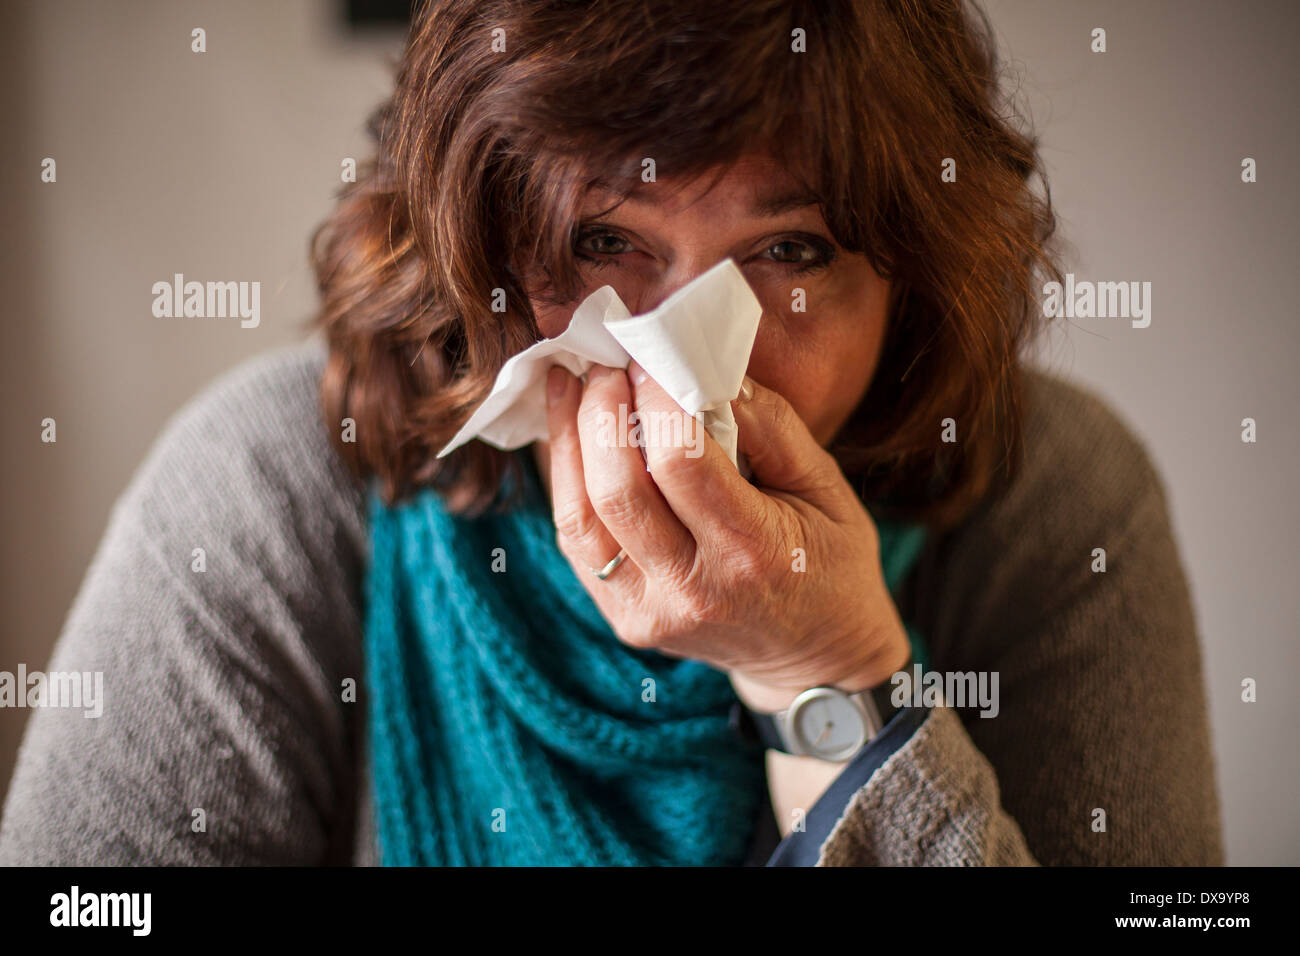 Femme malade avec écharpe bleue et mouchoir blowing nose Banque D'Images